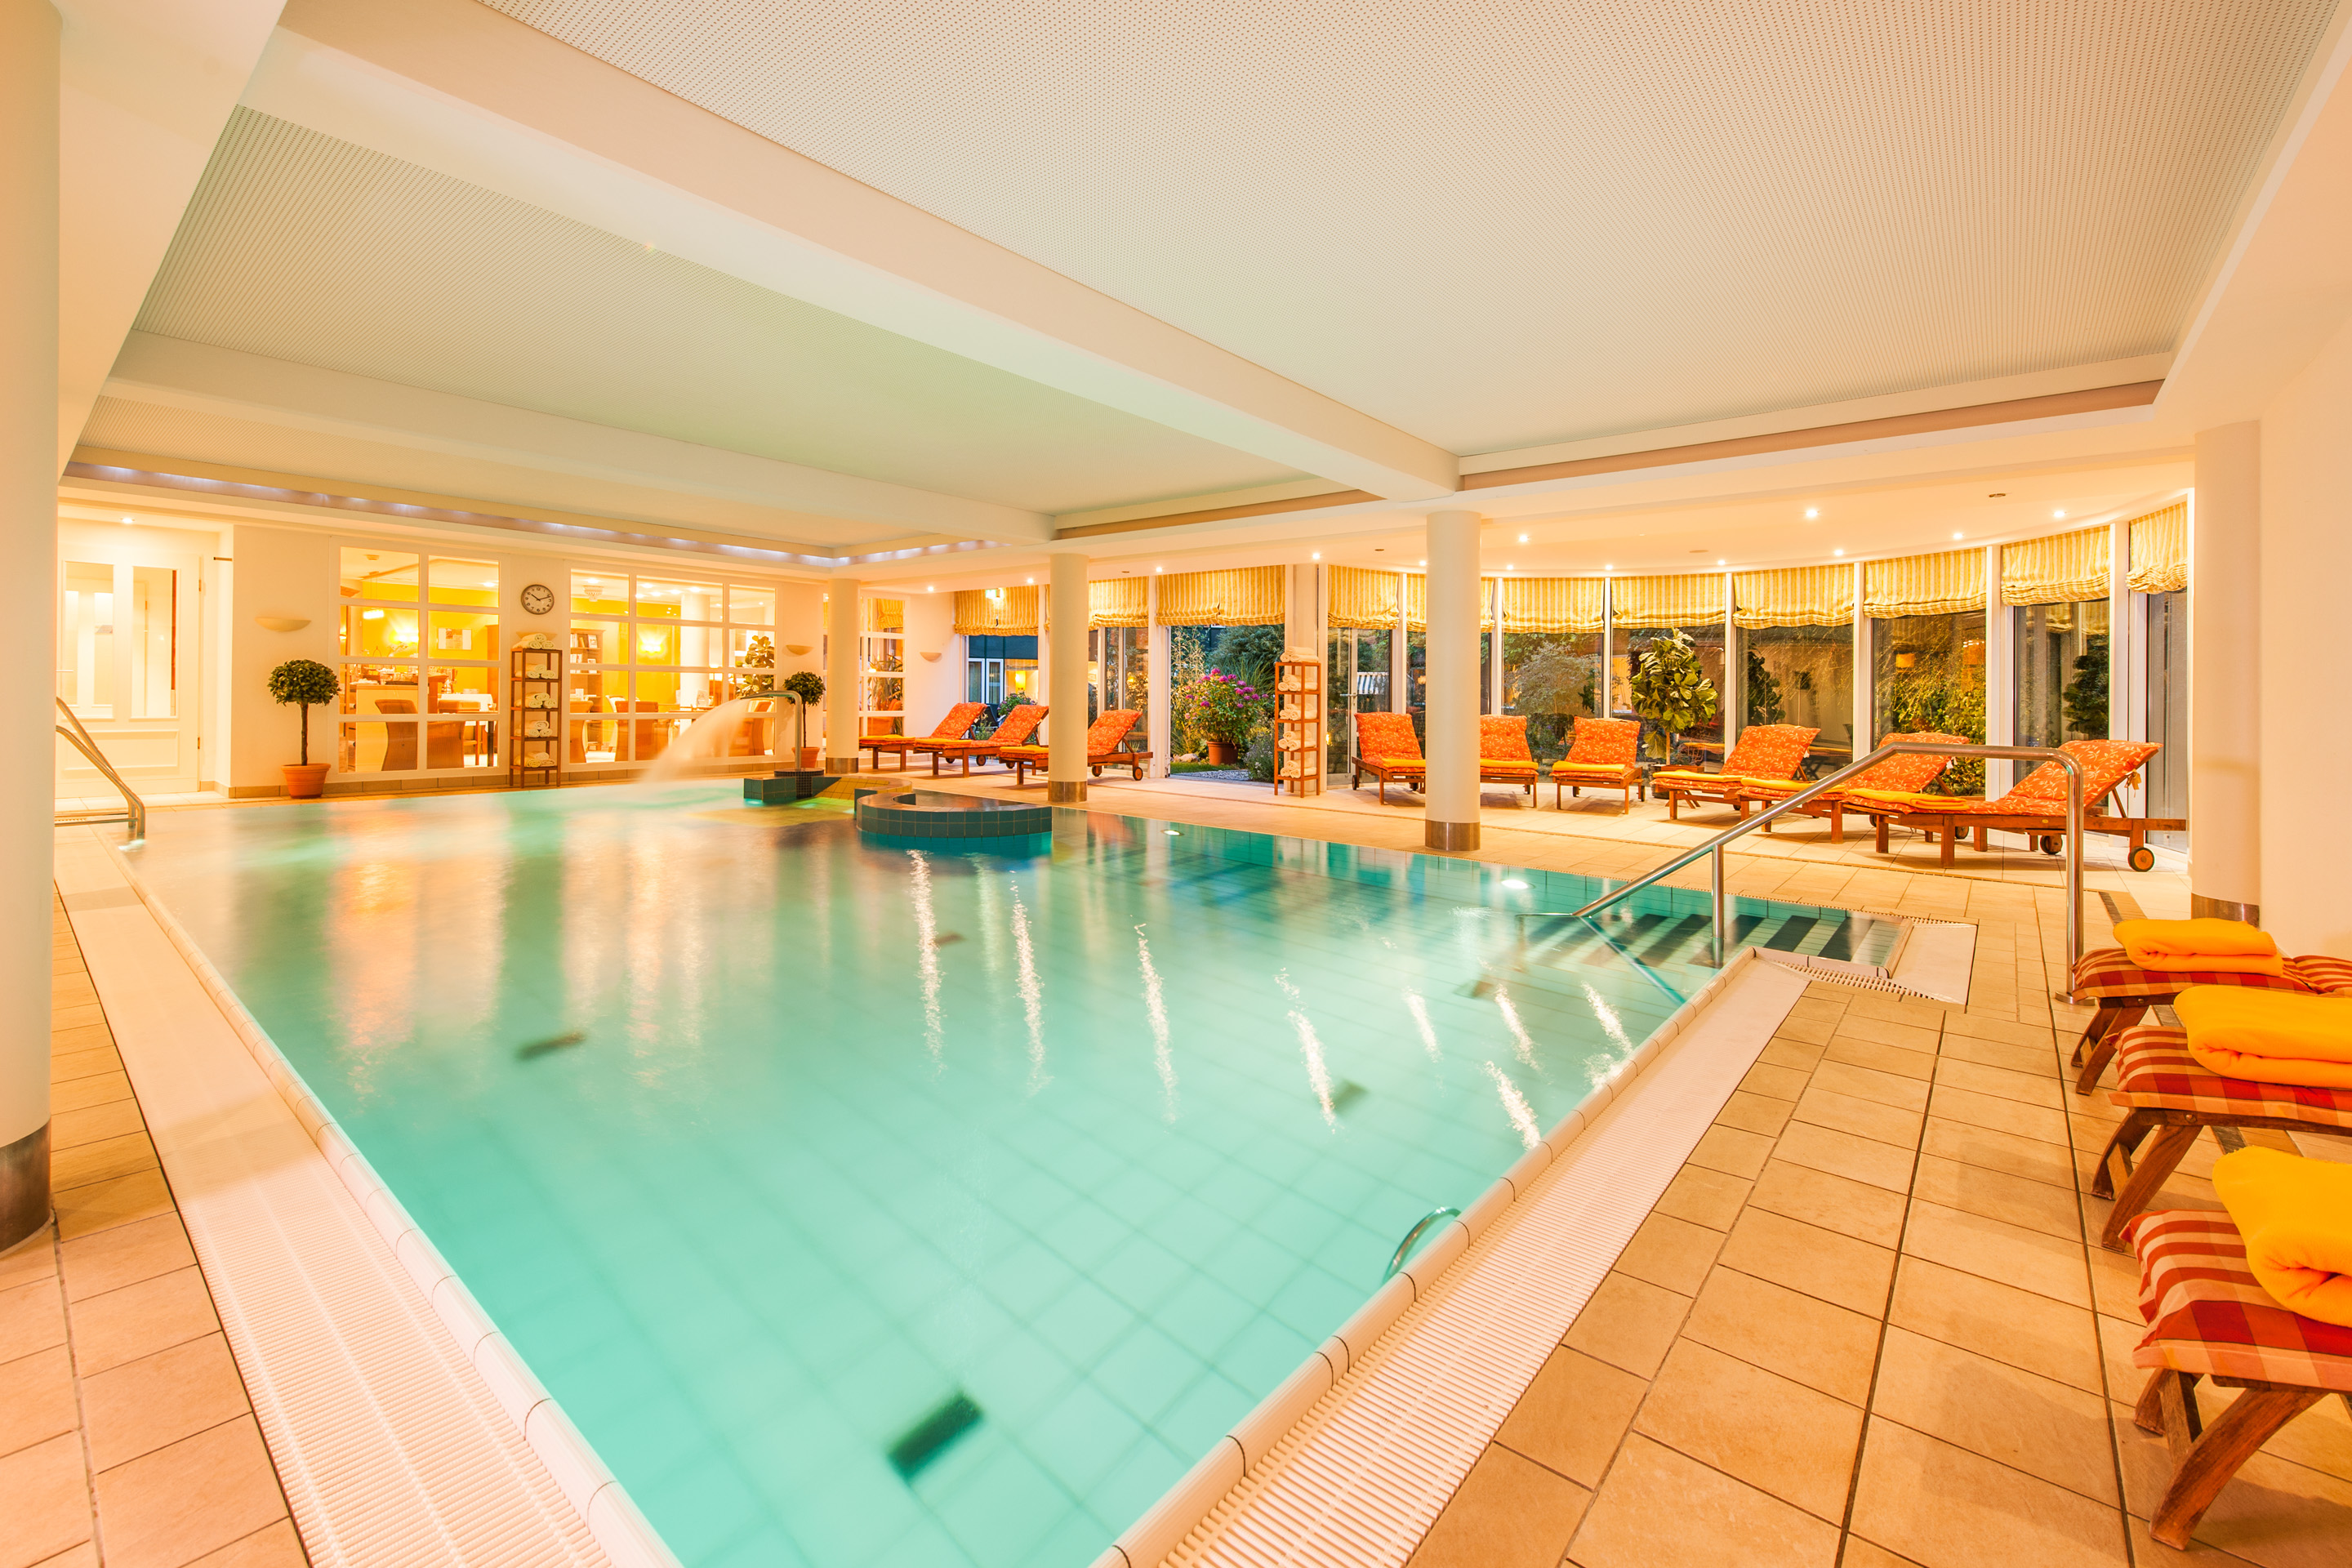 Pool at the Ringhotel Birke in Kiel